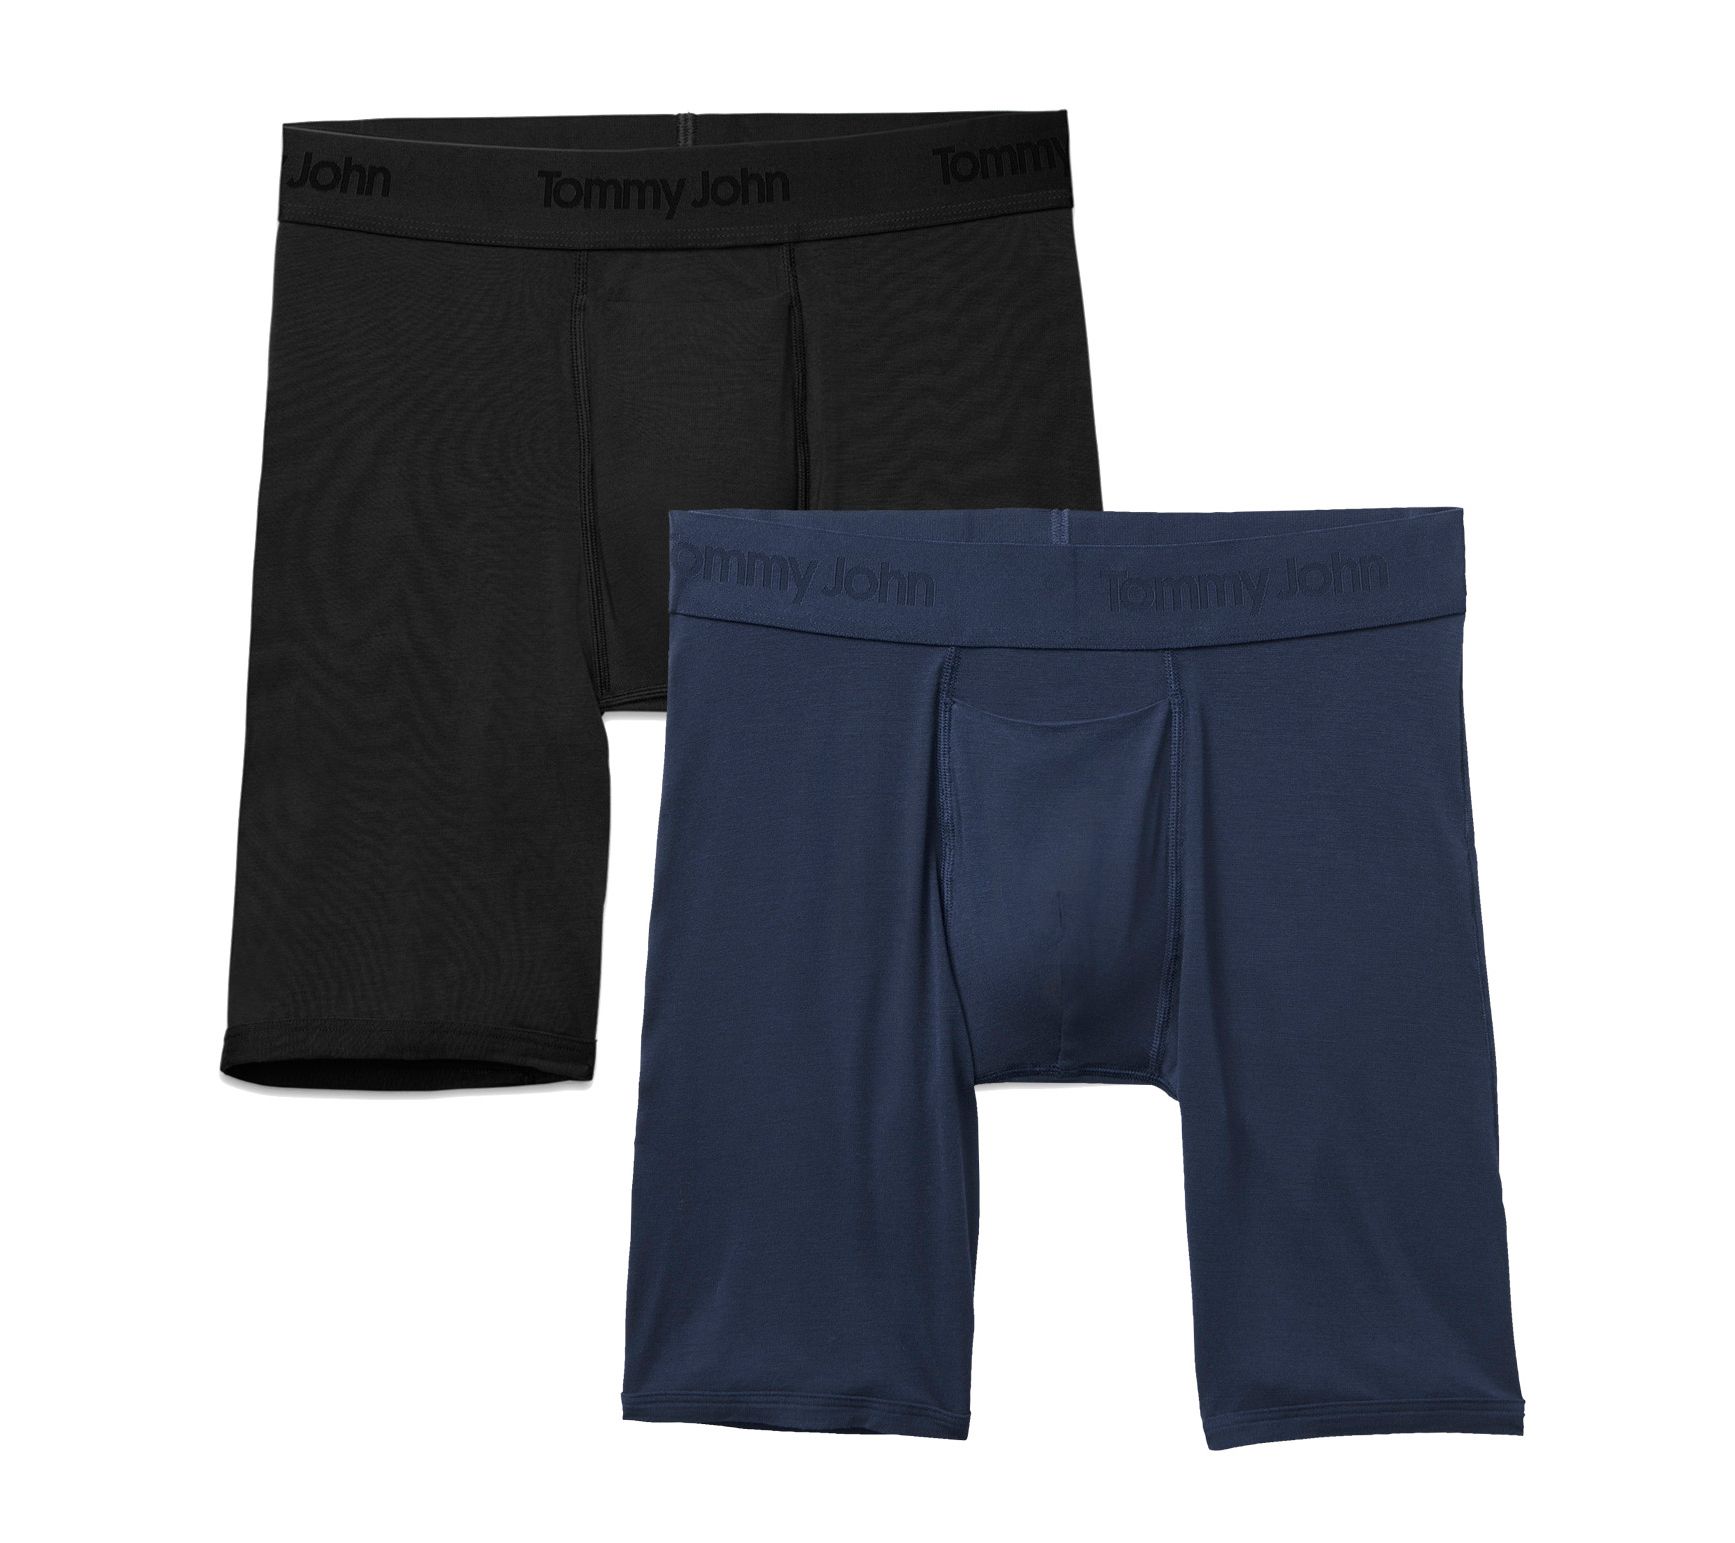 Tommy John Men’s Second Skin Underwear XL Boxer Briefs 4 Botanical Garden